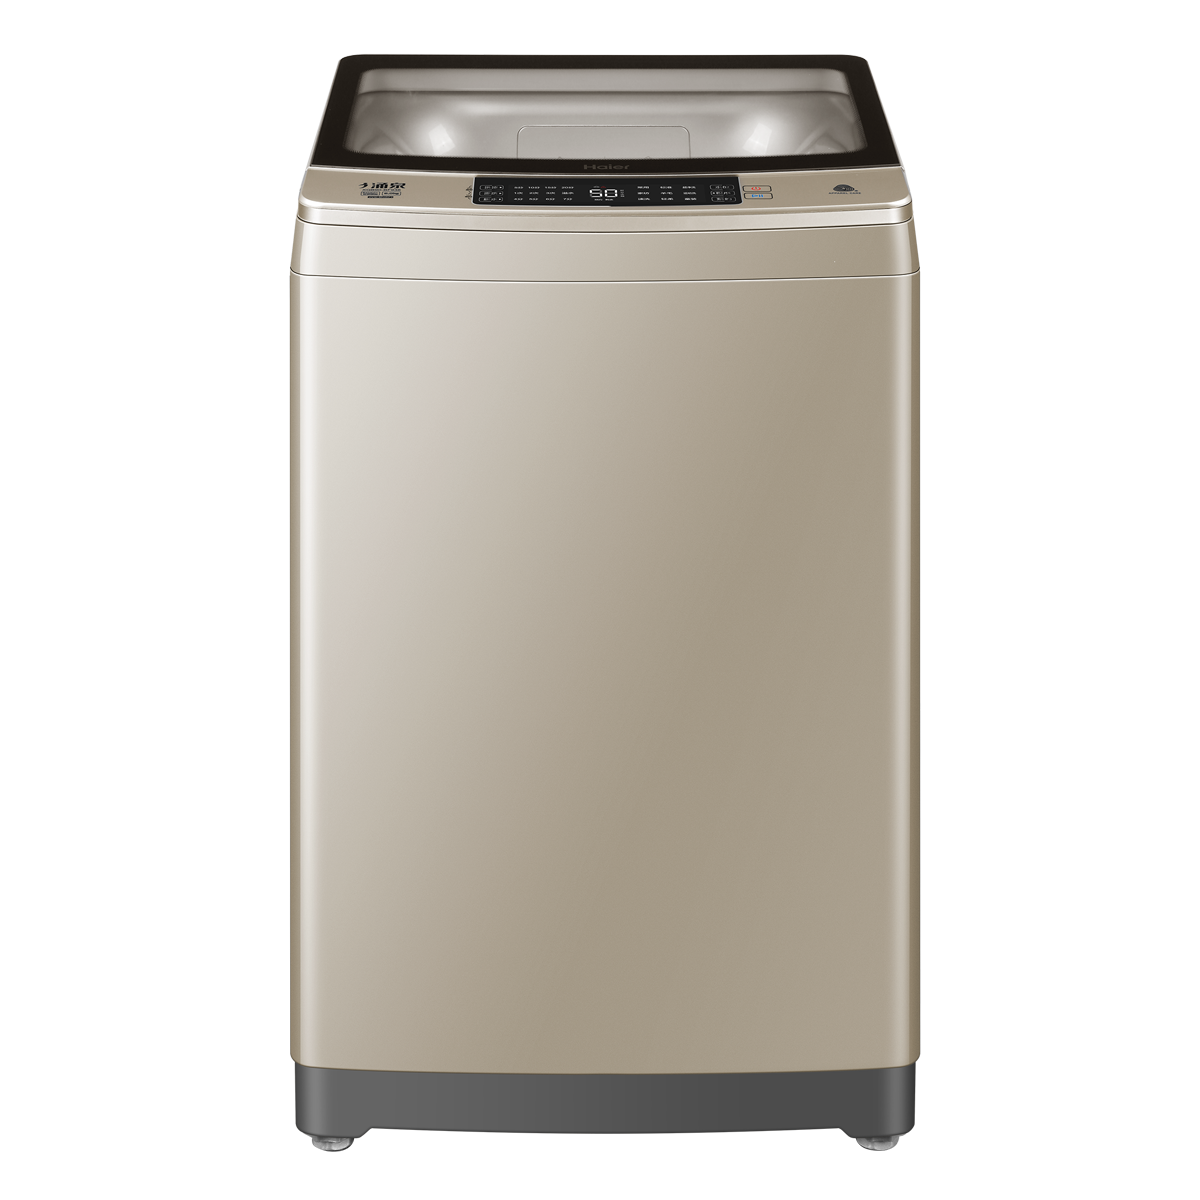 海尔Haier洗衣机 XQB90-BF936 说明书